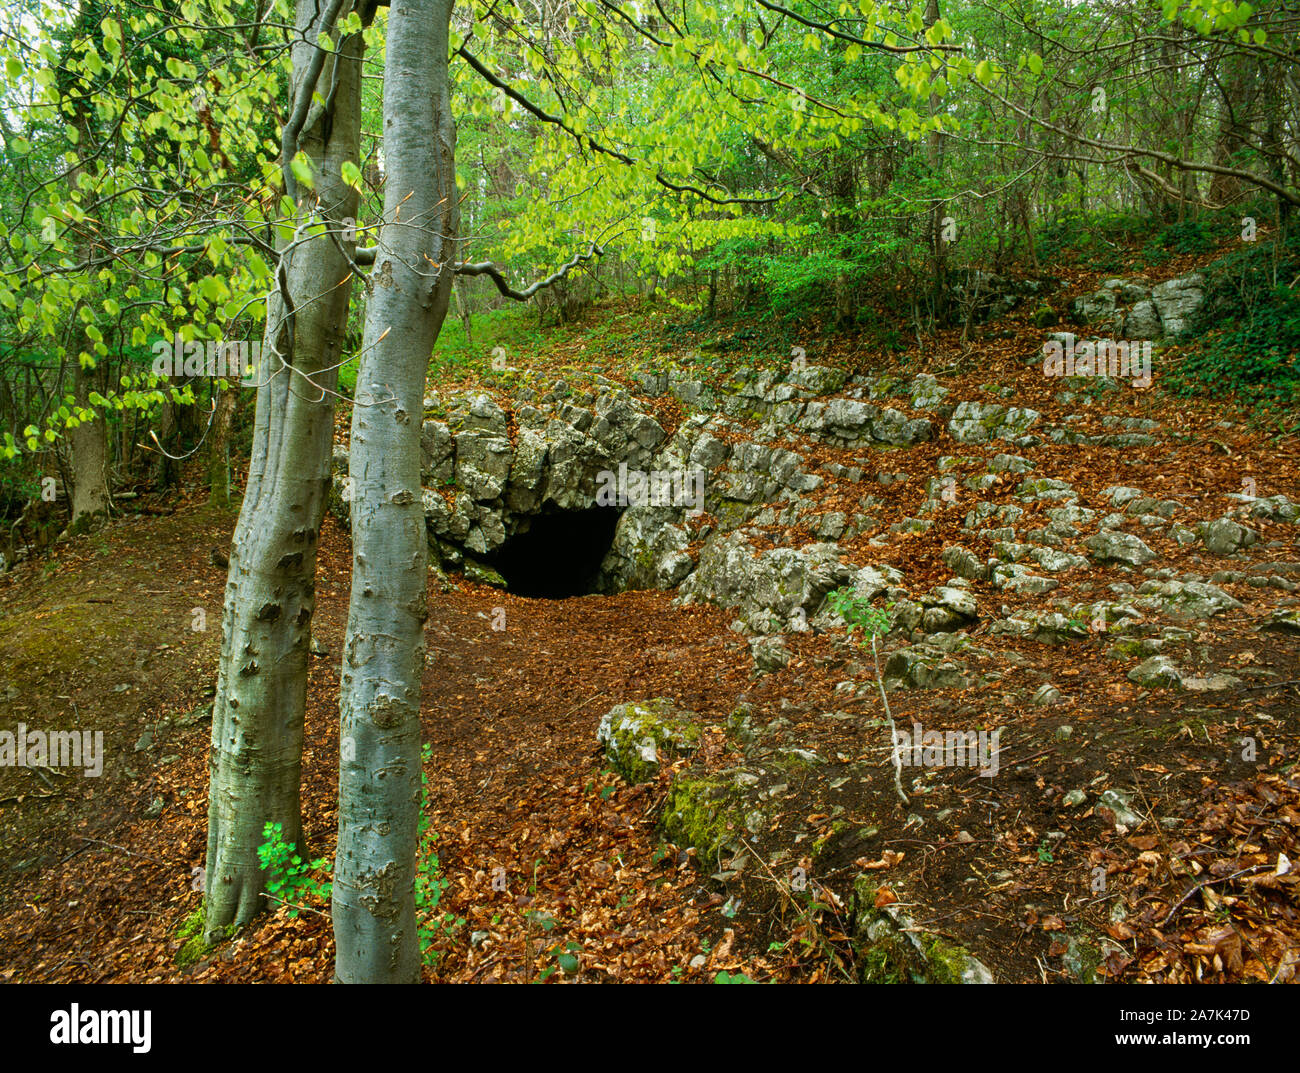 Voir le produit N de l'entrée de grotte secrète Big dans un affleurement de calcaire dans les grands bois clandestines, Llanferres, Denbighshire, Wales, UK : des restes humains et objets trouvés. Banque D'Images